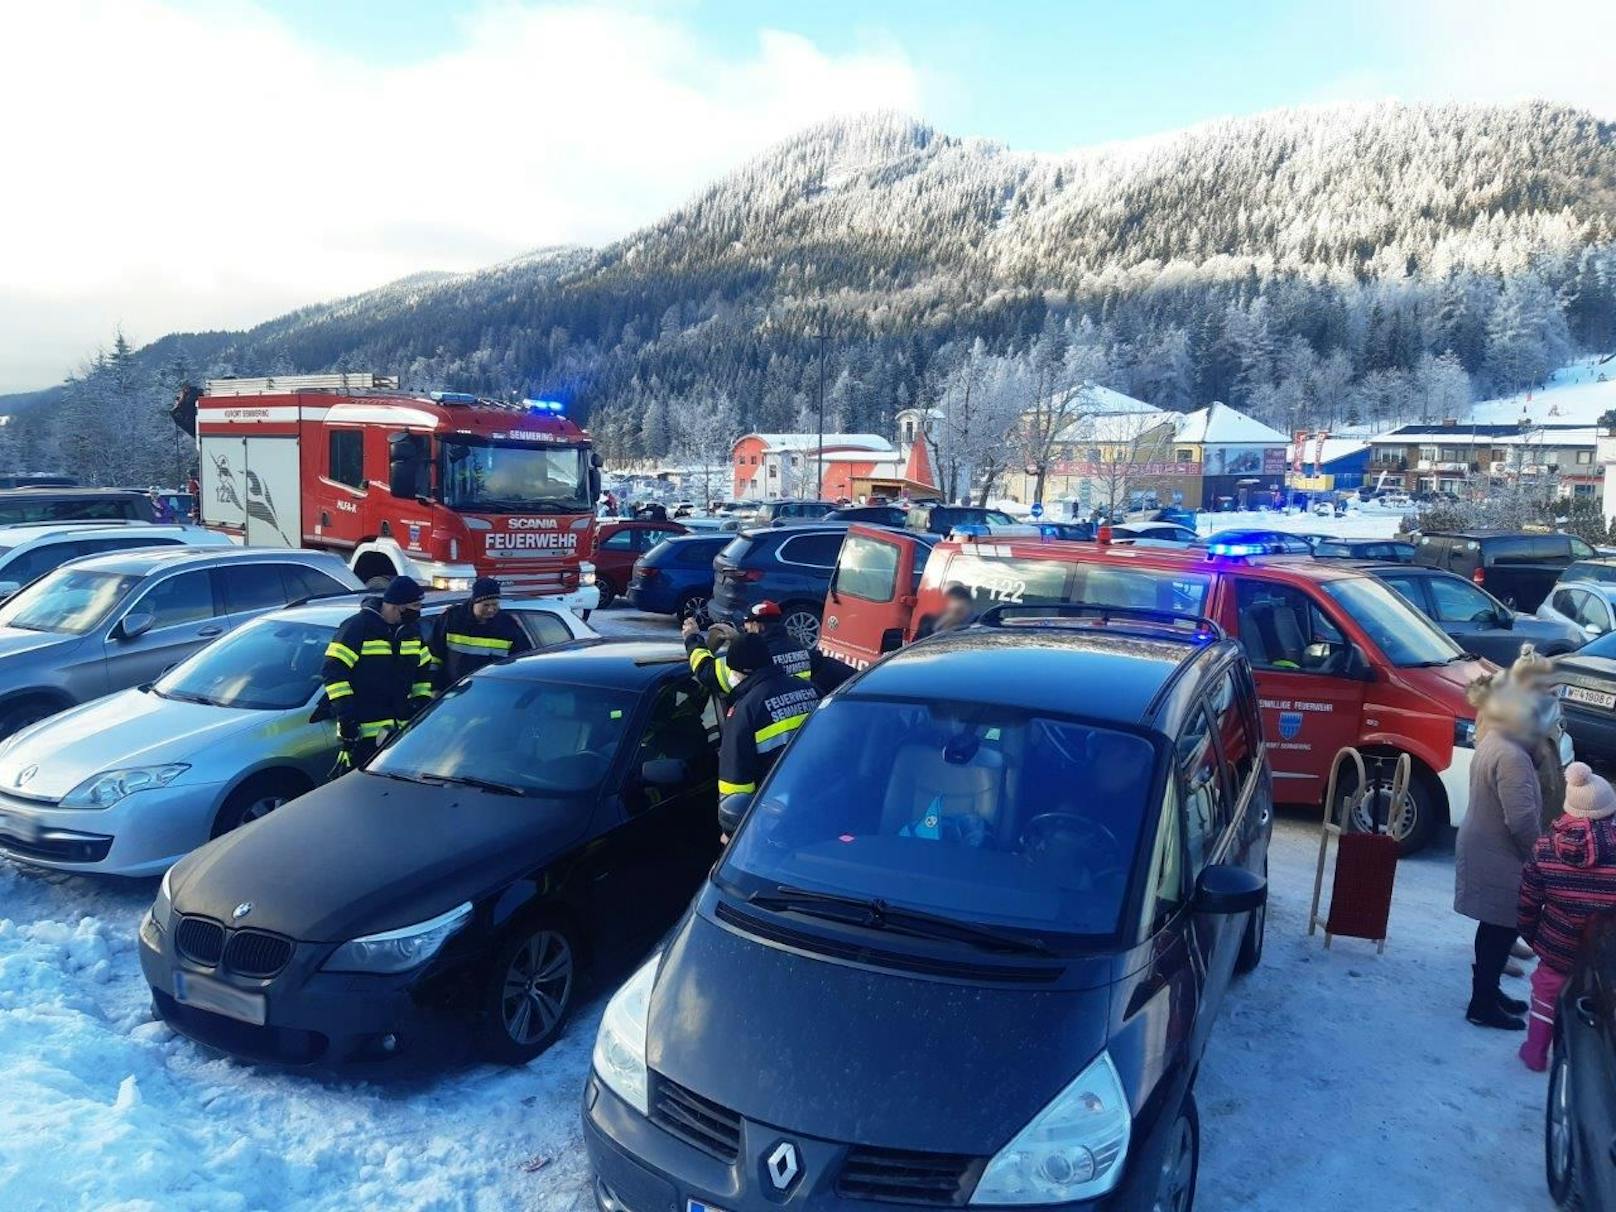 Feuerwehreinsatz am Dienstag am Semmering! Ein BMW hatte sich trotz laufendem Motor "von selbst" versperrt. Ein Kleinkind war in dem Auto gefangen und musste befreit werden.